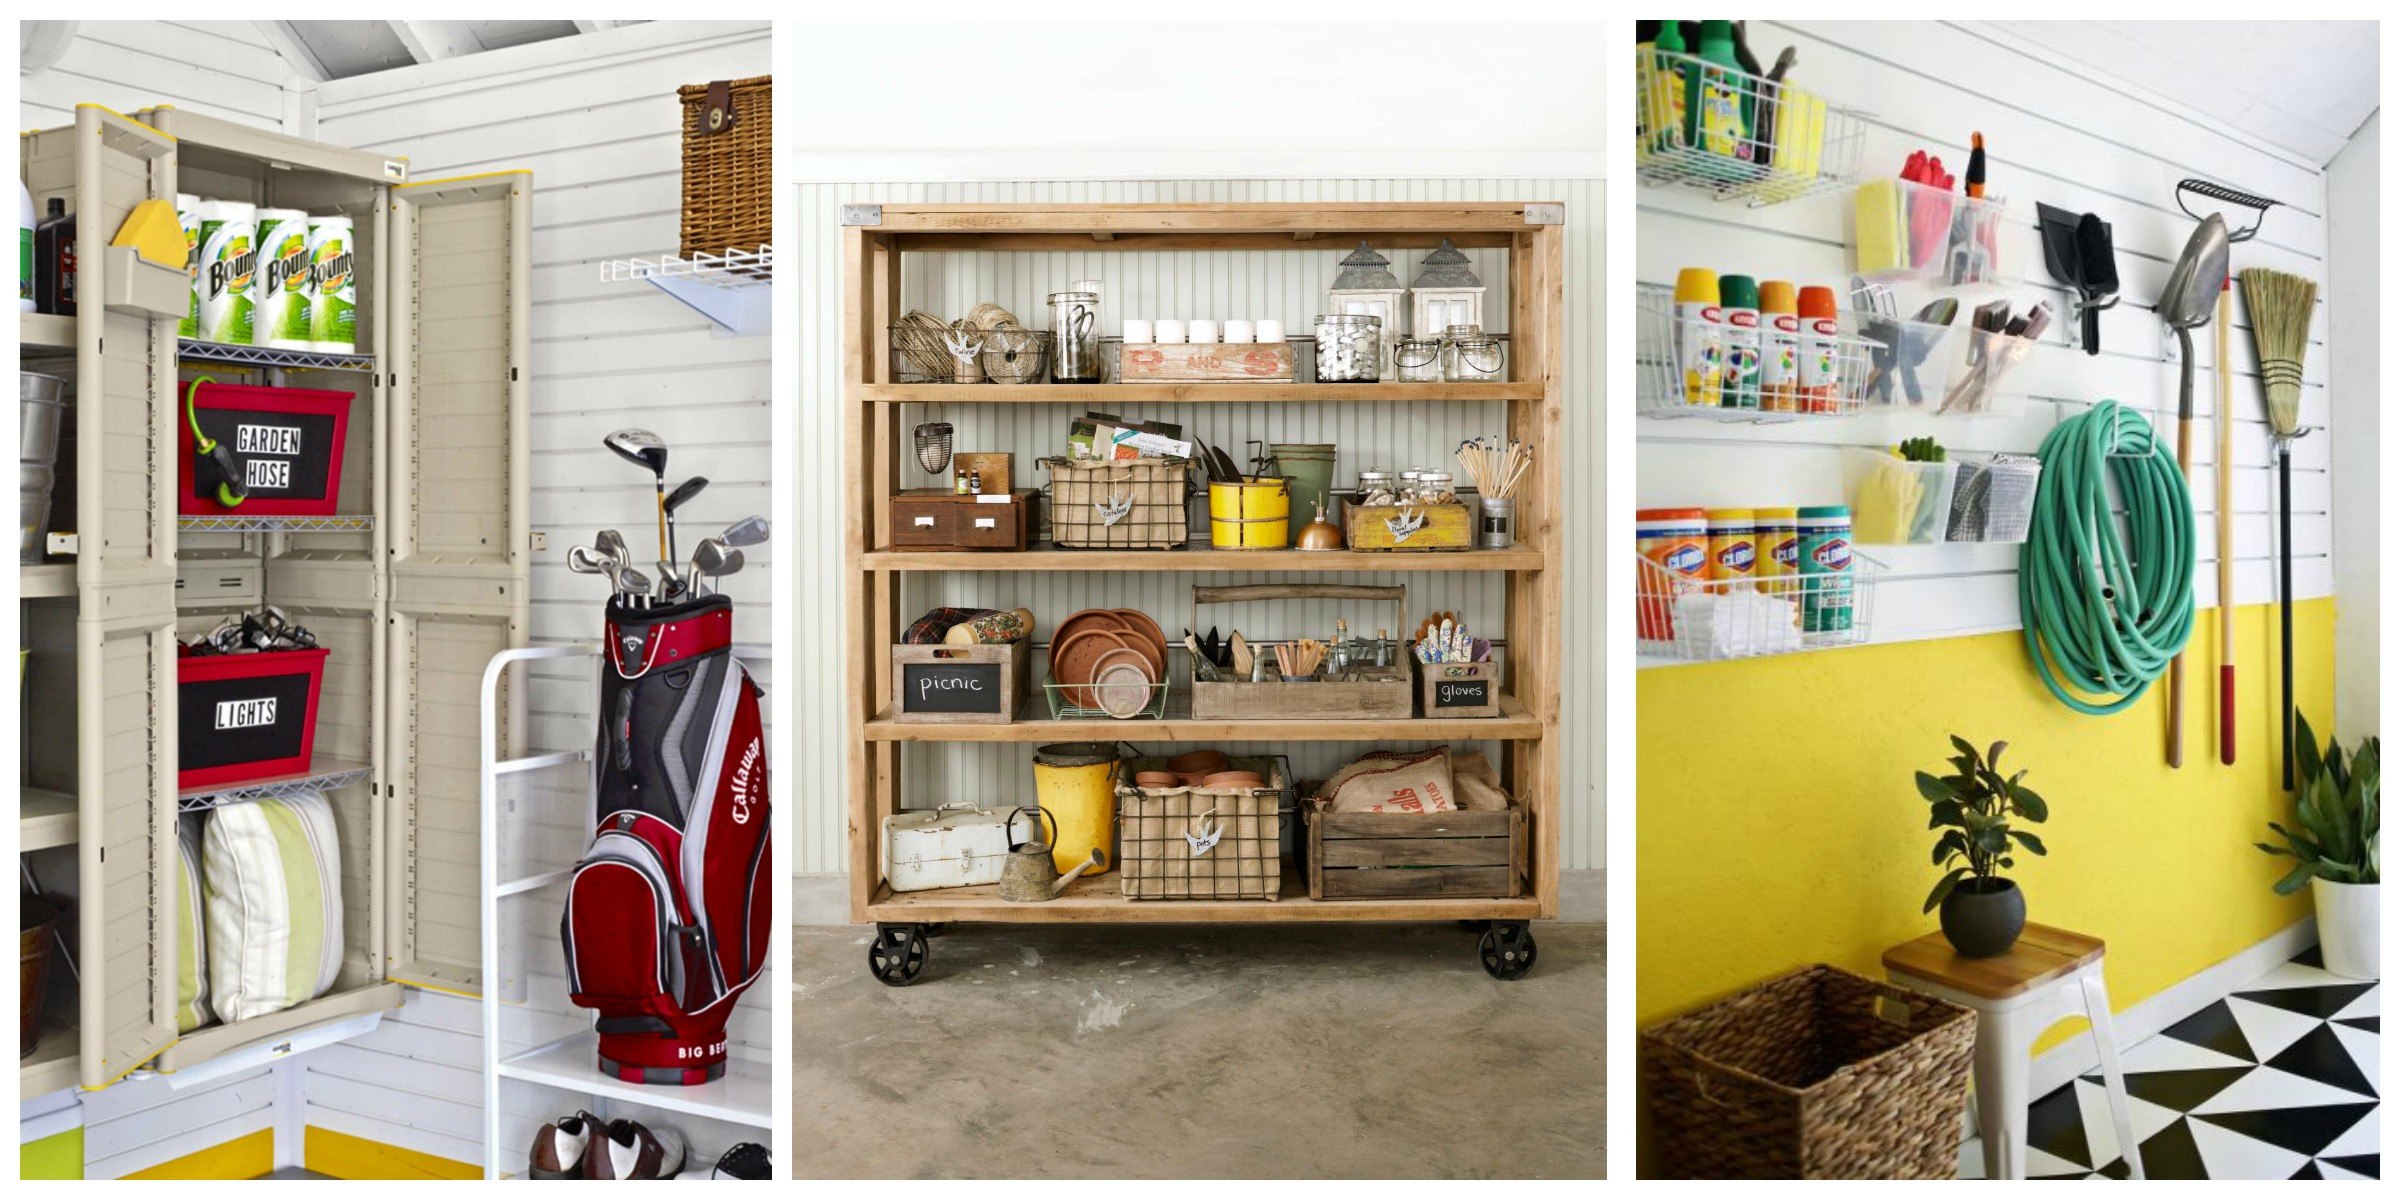 DIY Garage Organization Ideas
 14 of the Best Garage Organization Ideas on Pinterest